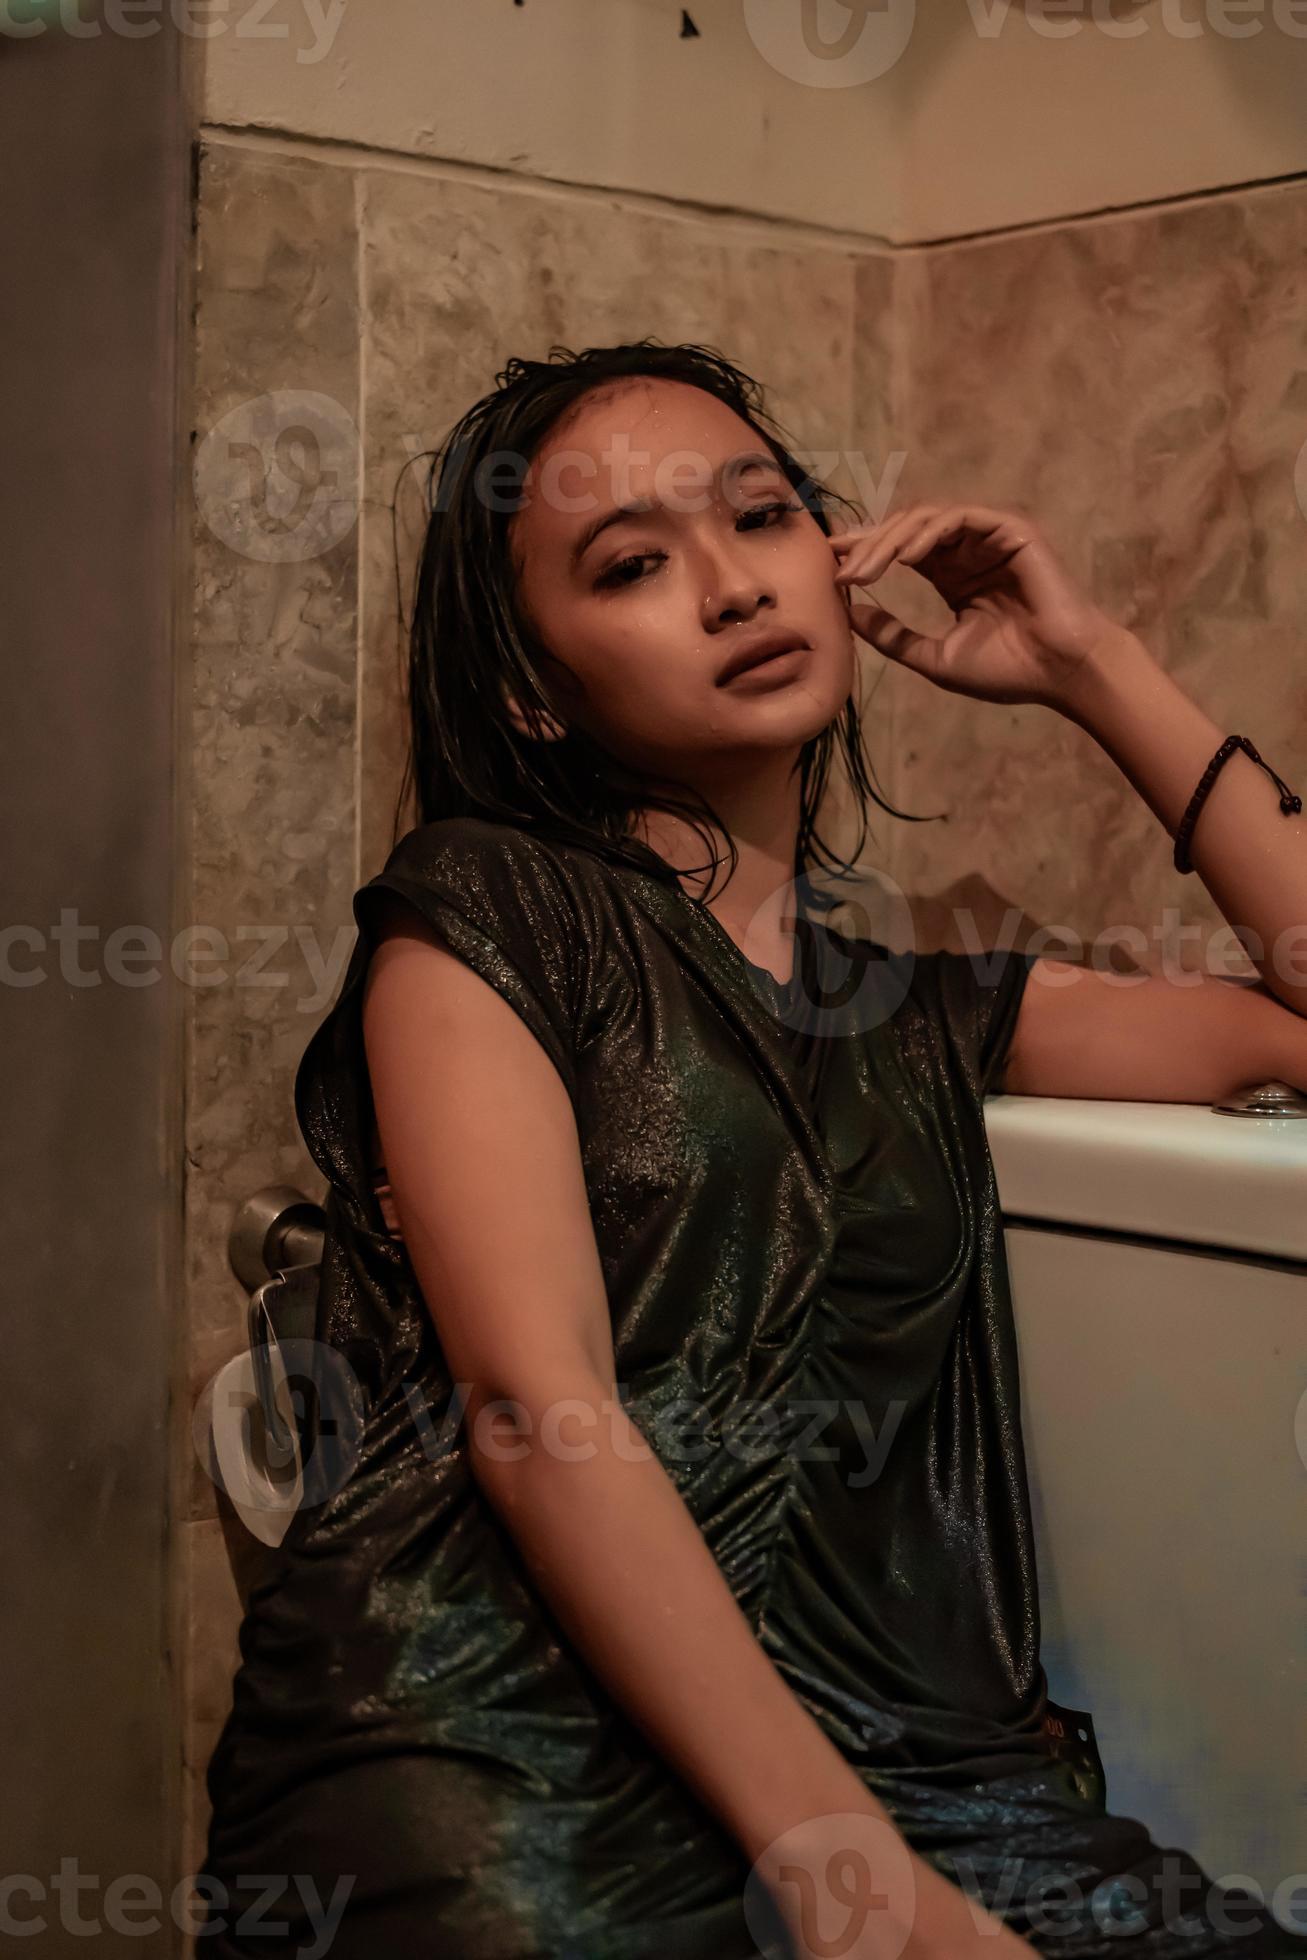 dhilip kumar share hot and wet girls photos